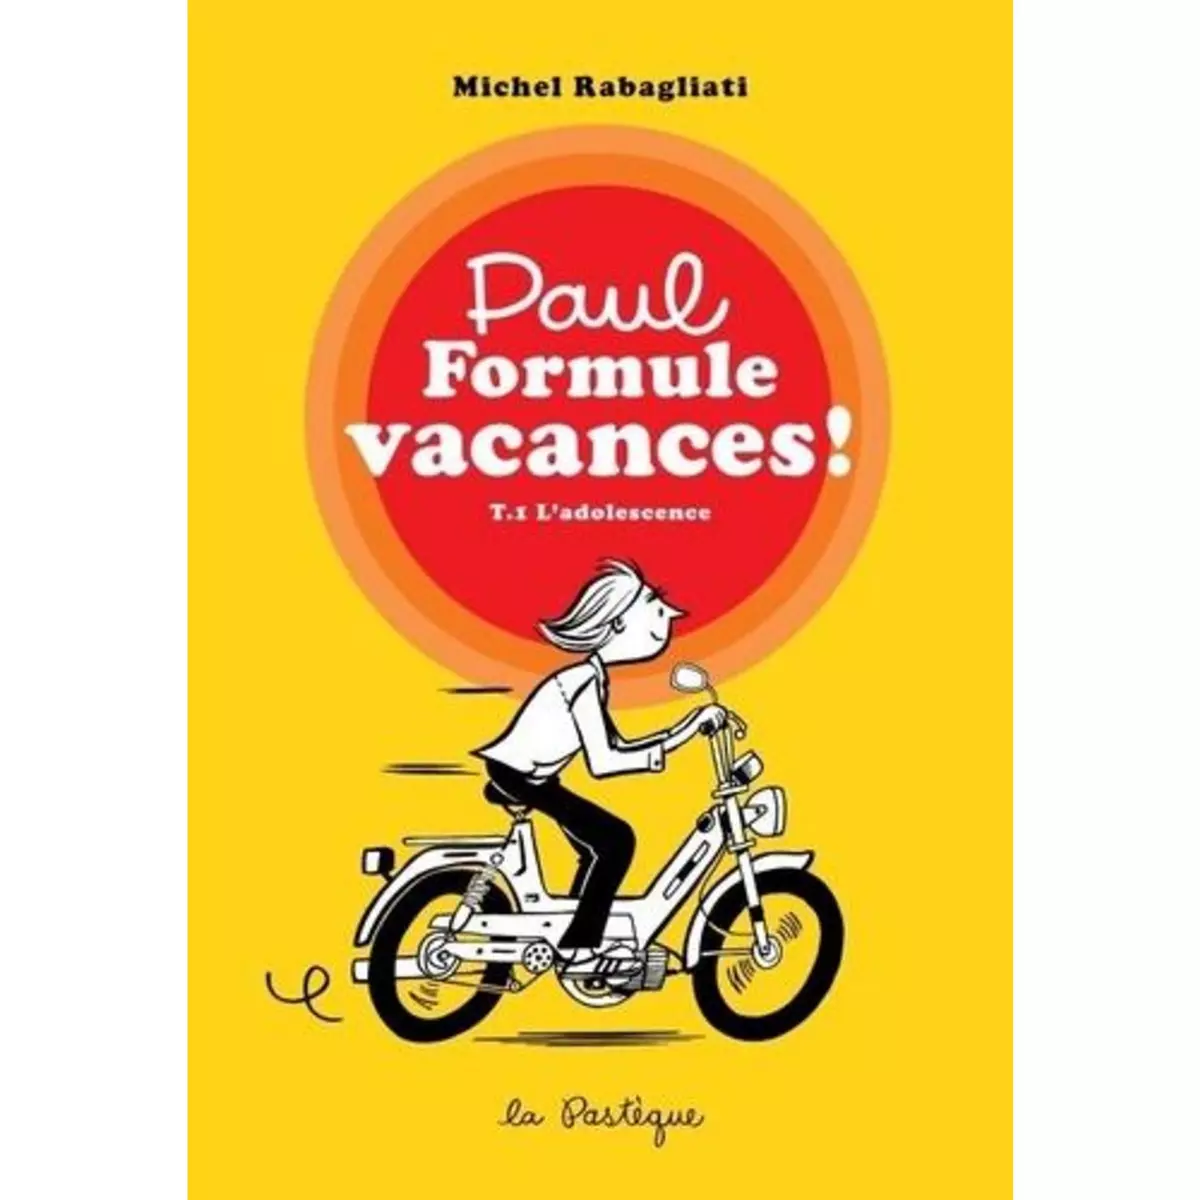  PAUL TOME 1 : L'ADOLESCENCE. FORMULE VACANCES ! : PAUL A UN TRAVAIL D'ETE ; PAUL DANS LE NORD, Rabagliati Michel